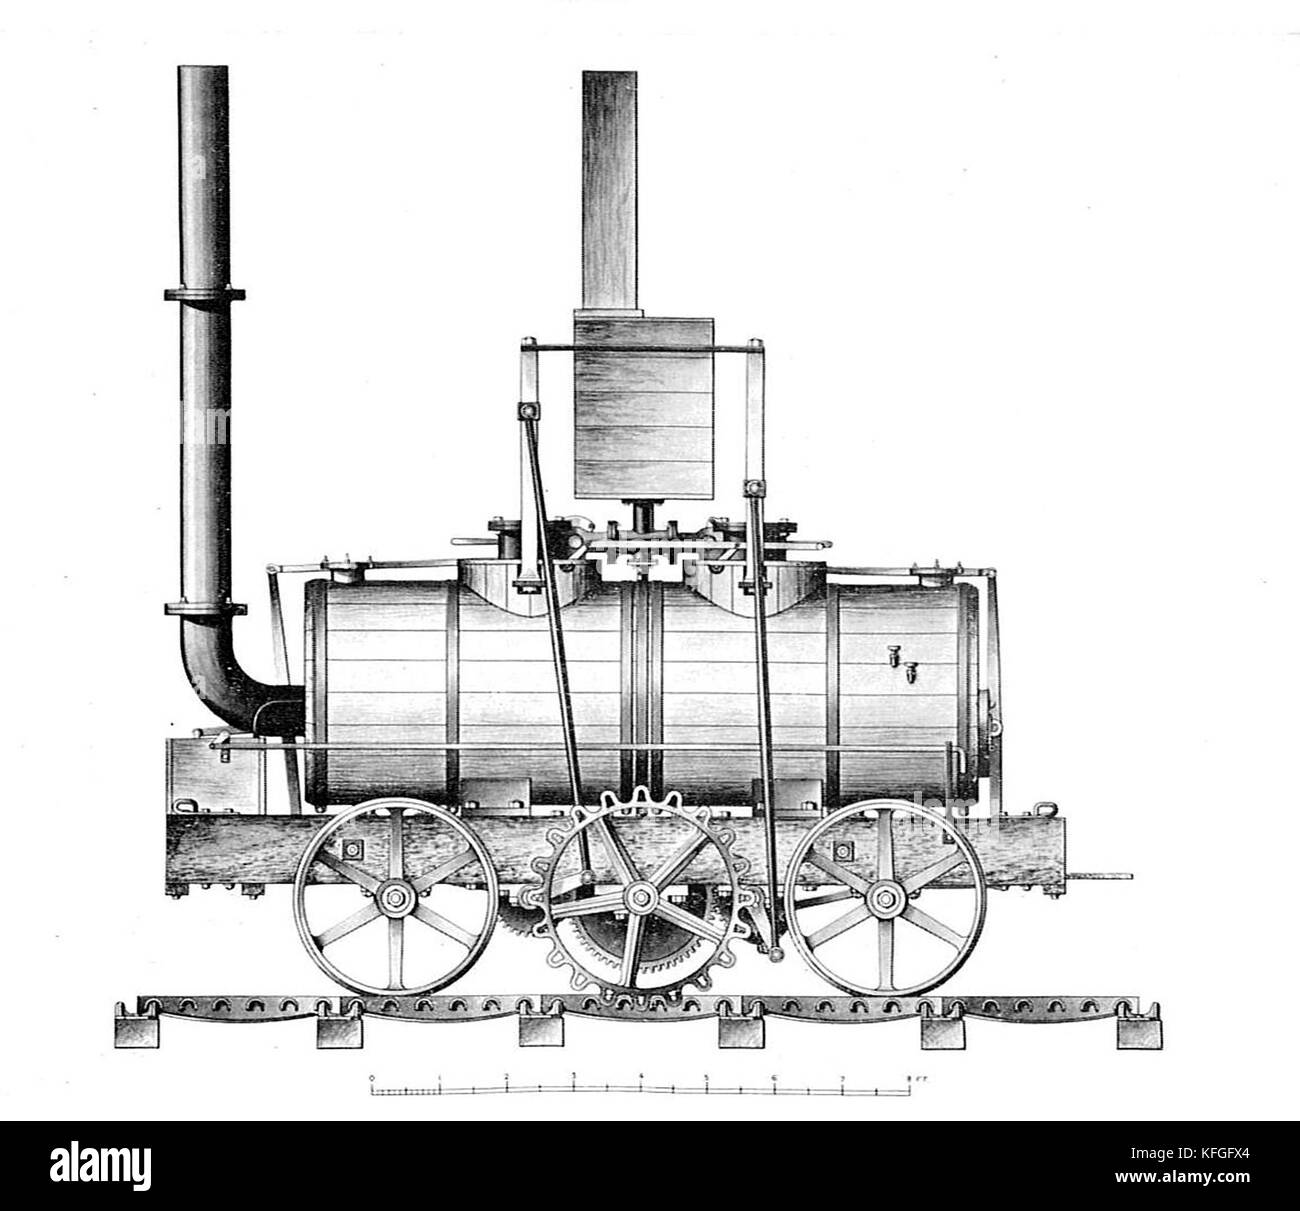 La locomotora de Salamanca, primer éxito comercial de las locomotoras de vapor, construido en 1812 Foto de stock